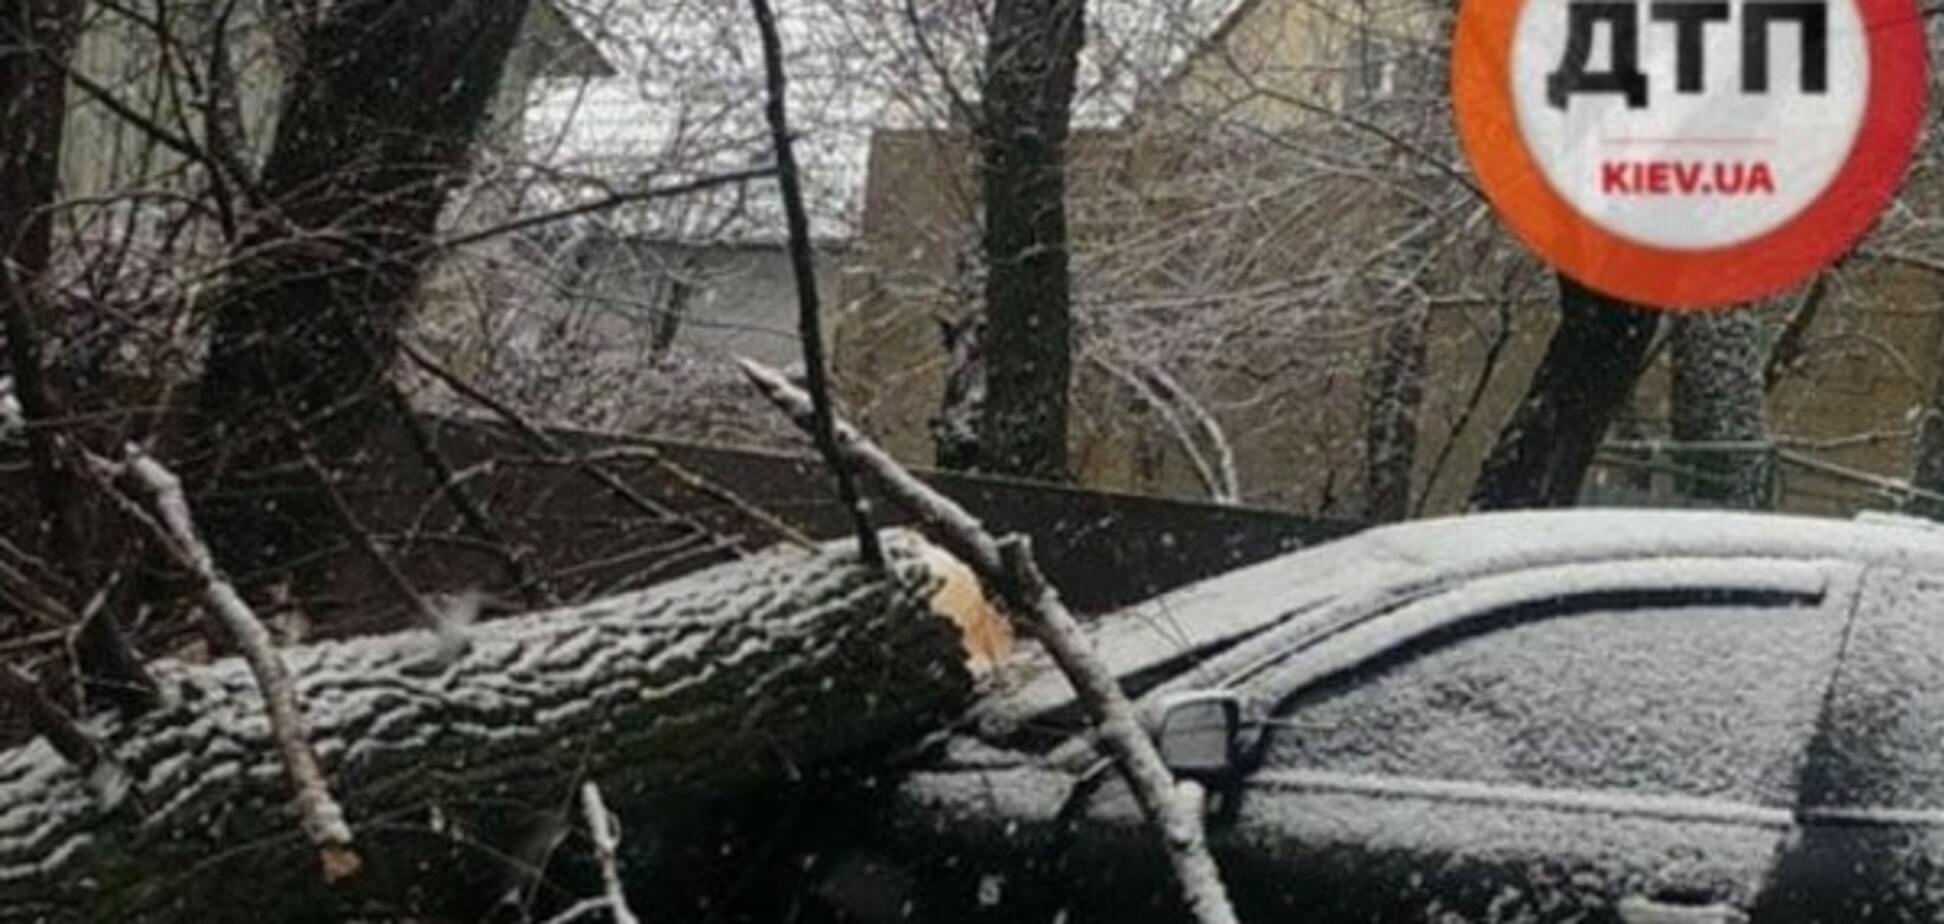 ДТП в Киеве: после удара на автомобиль упало дерево